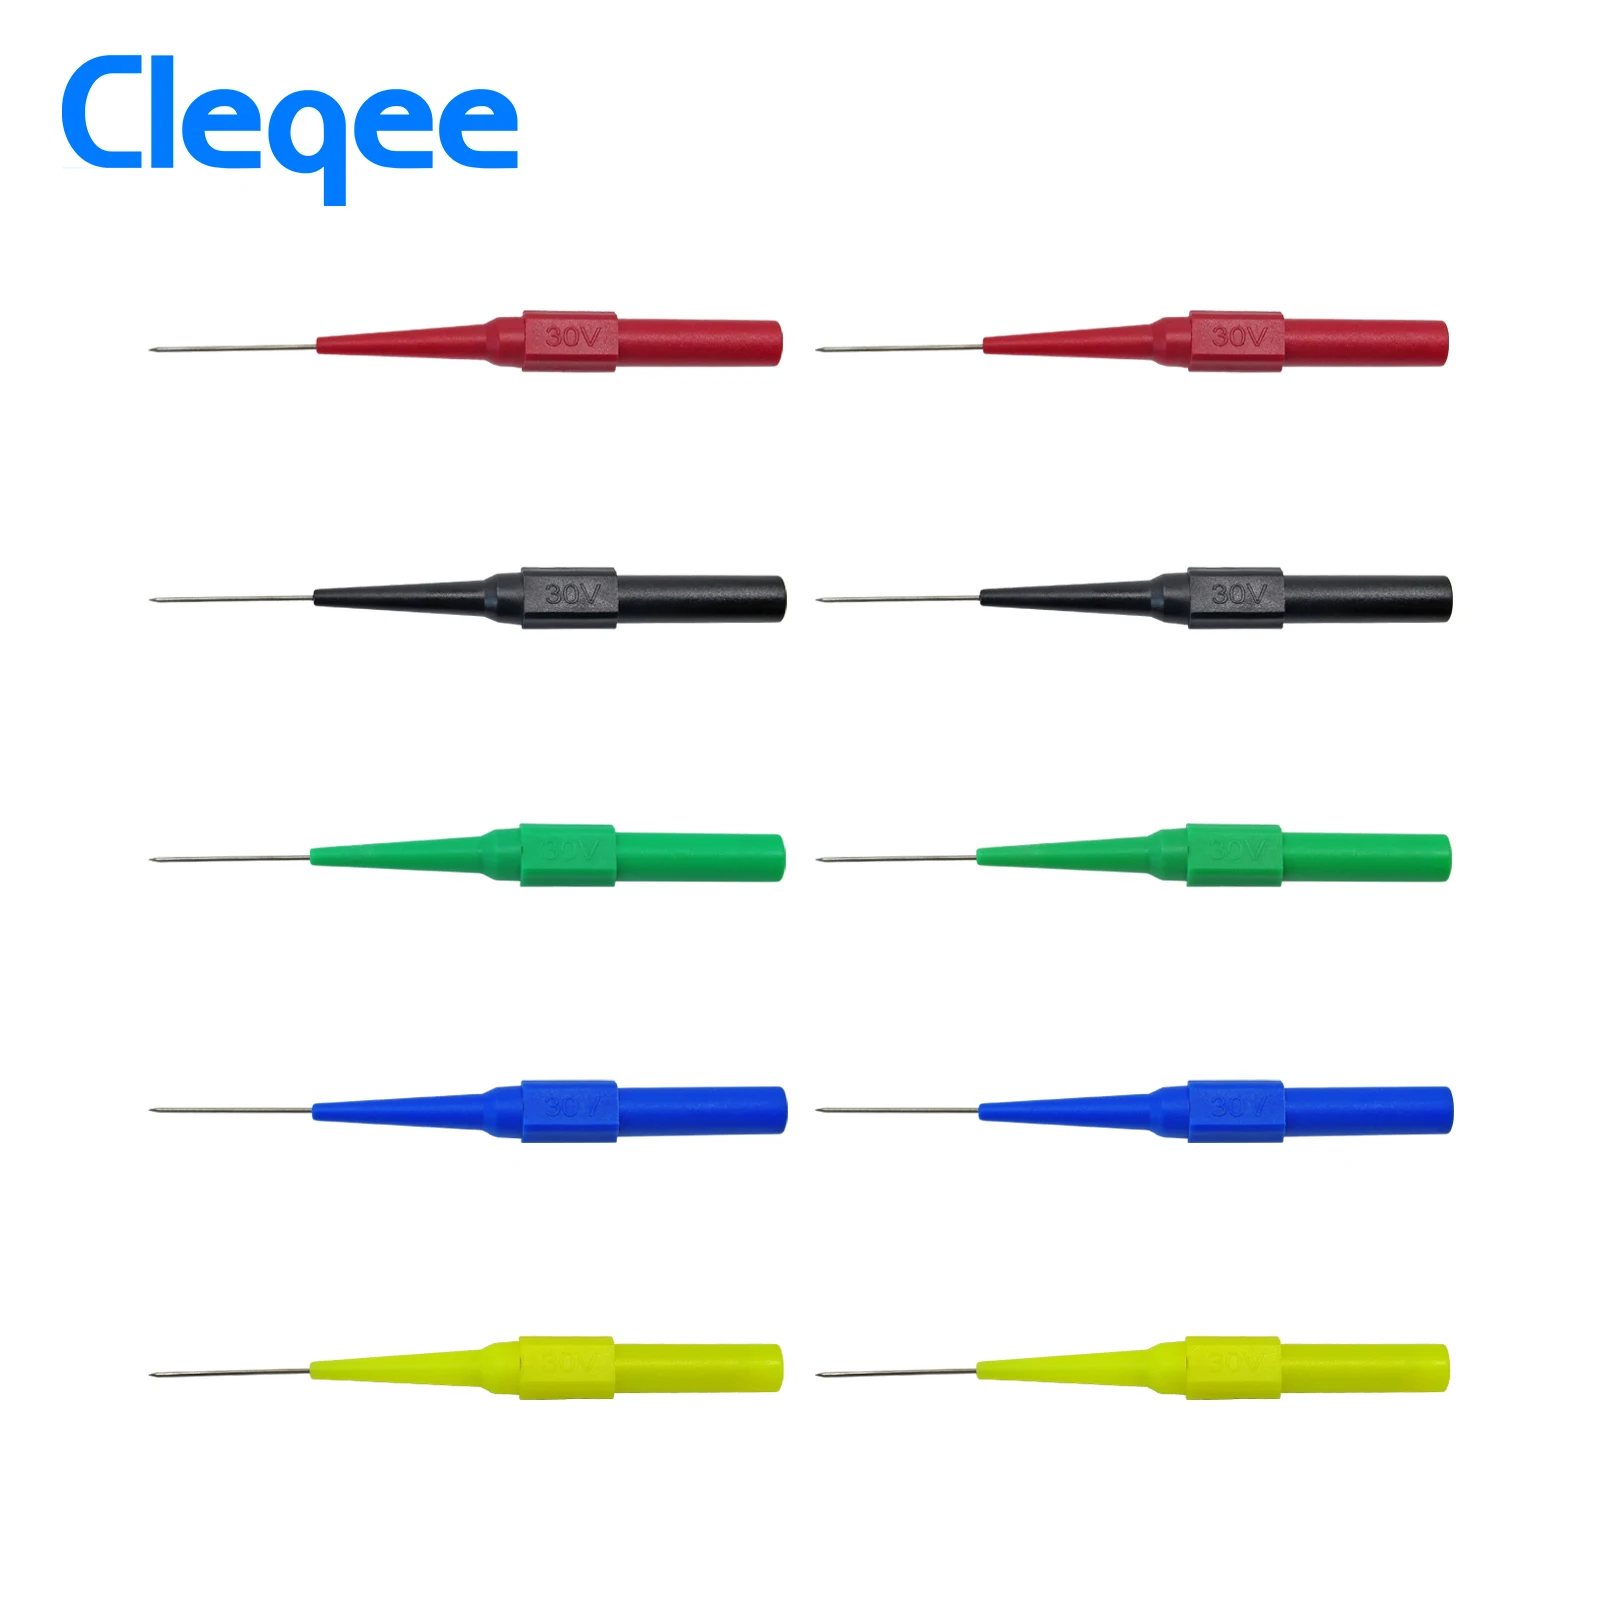 Cleqee P5007 10 шт. изоляция игла для прокалывания неразрушительный мультиметр Пробники красный/черный - Цвет: 5 pair -Five colors